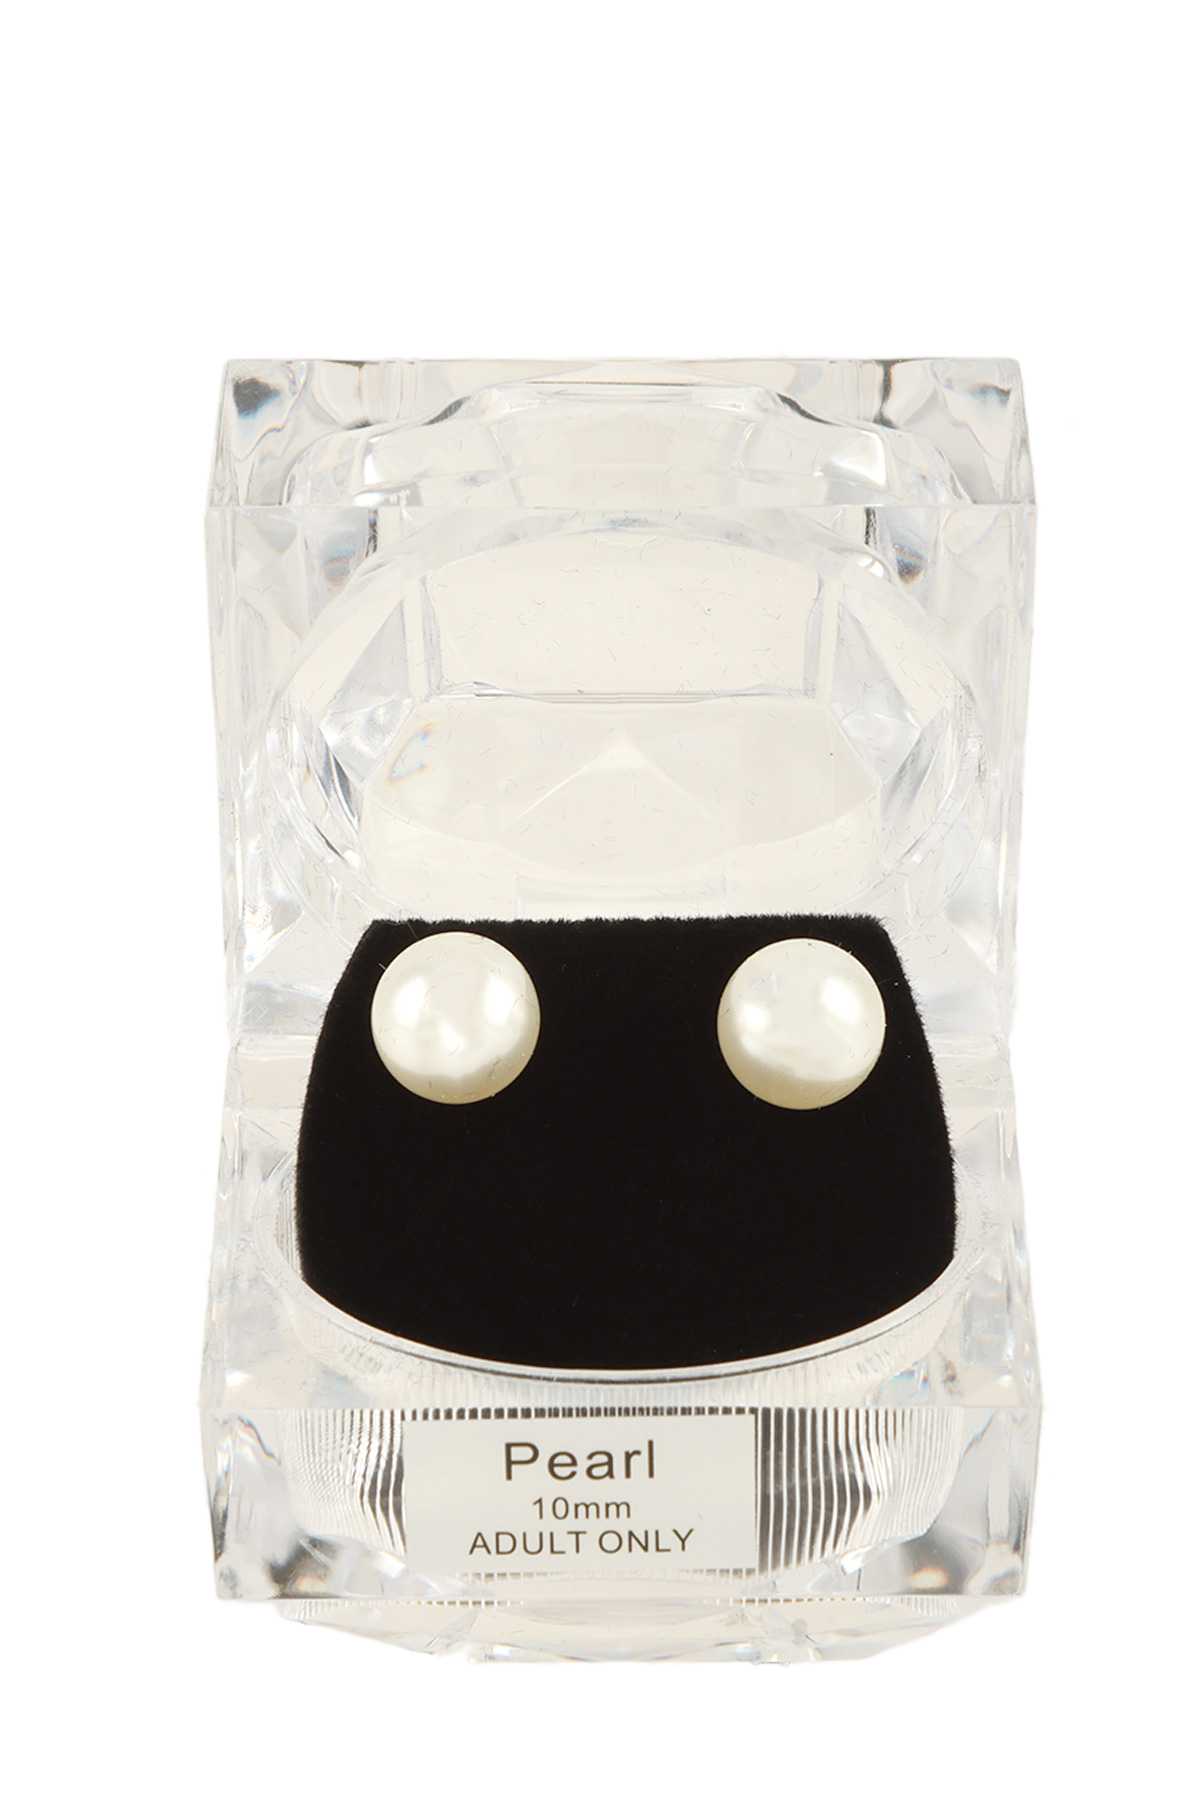 10mm Pearl Stud Earring